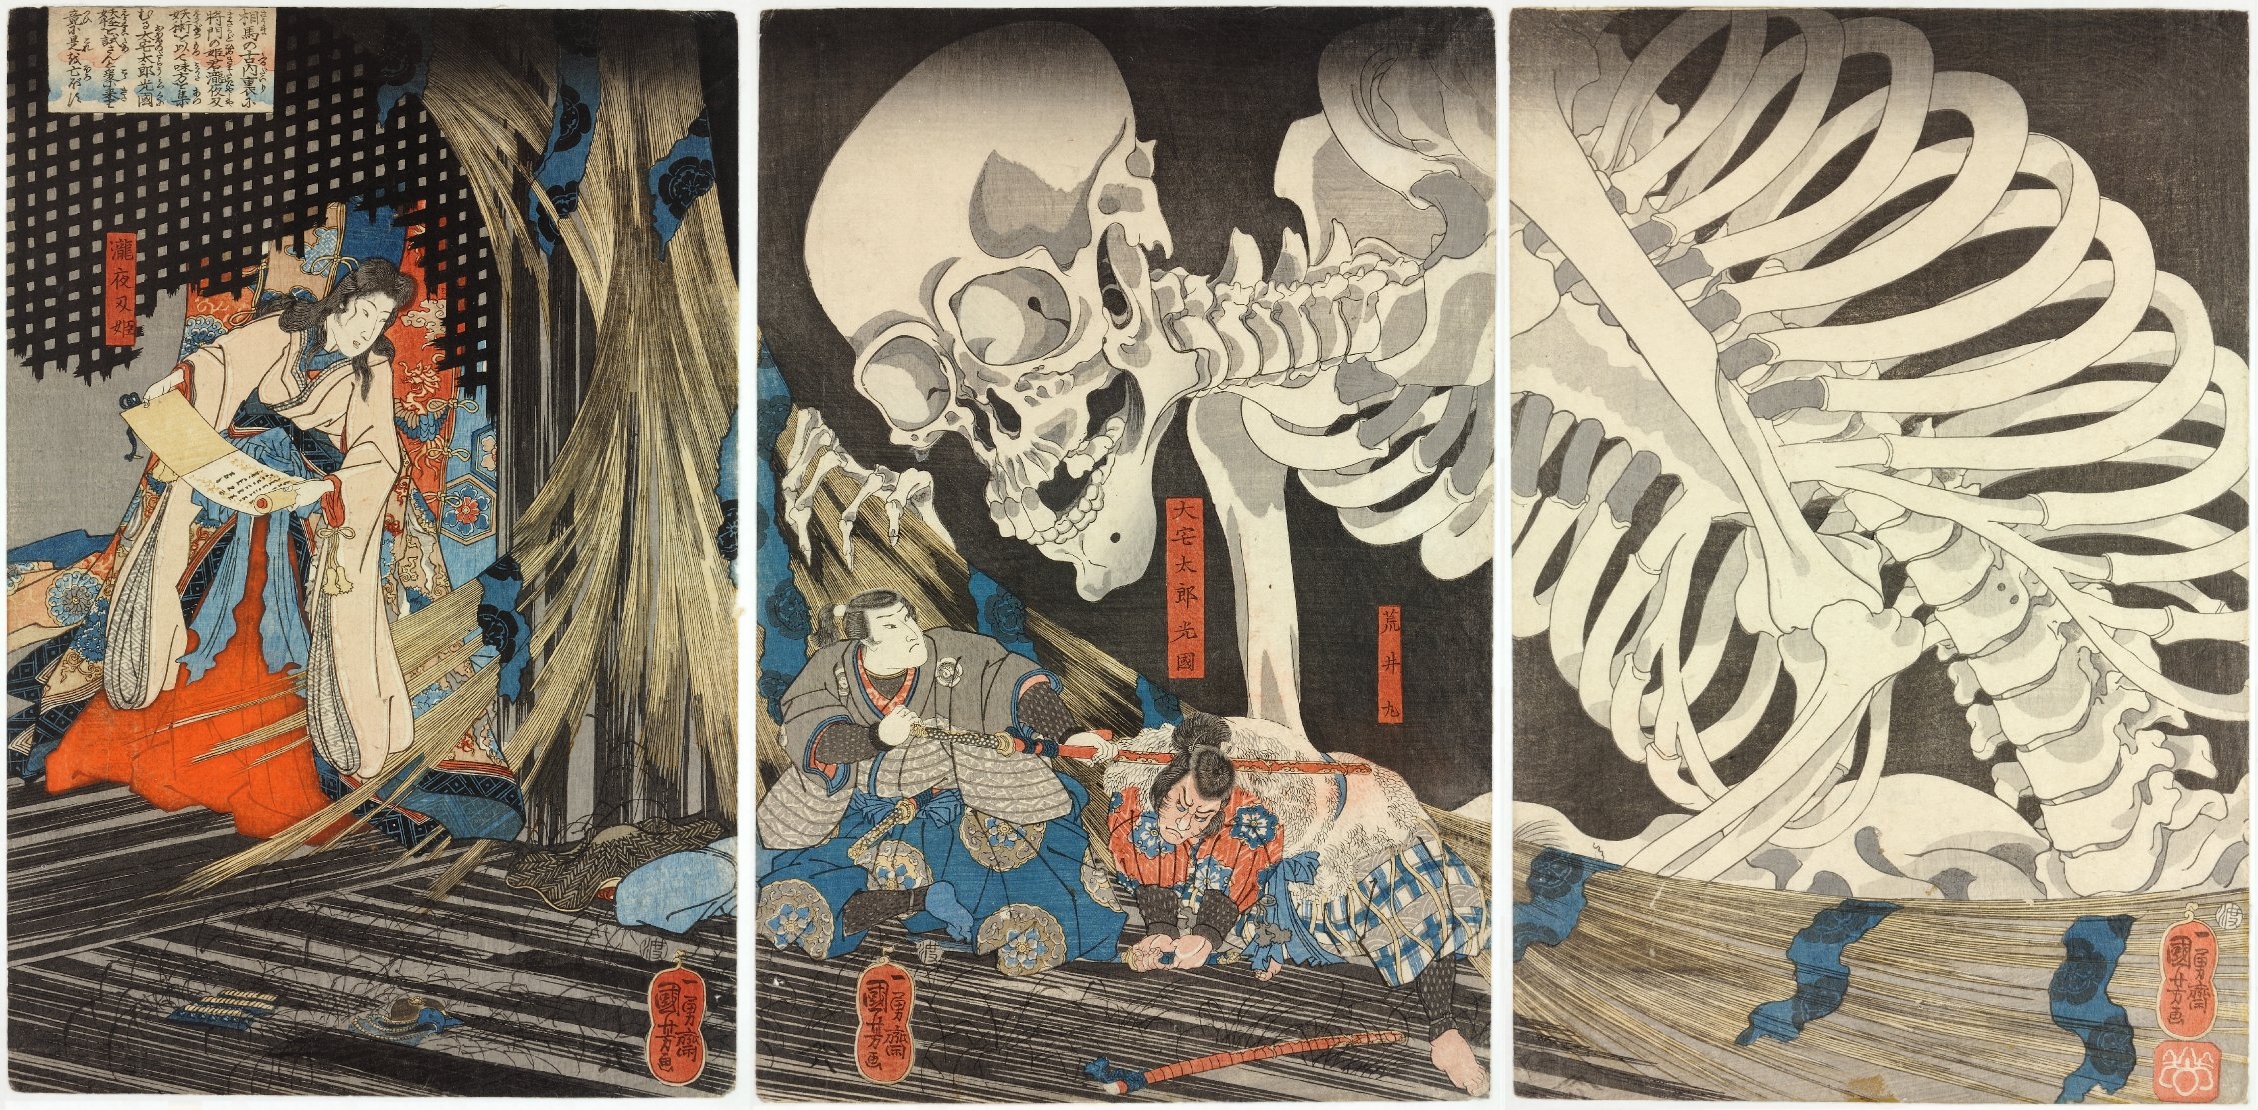 Takiyasha la bruja y el espectro esqueleto by Utagawa Kuniyoshi - c. 1844 - 35 x 71 cm Museo de Victoria y Alberto